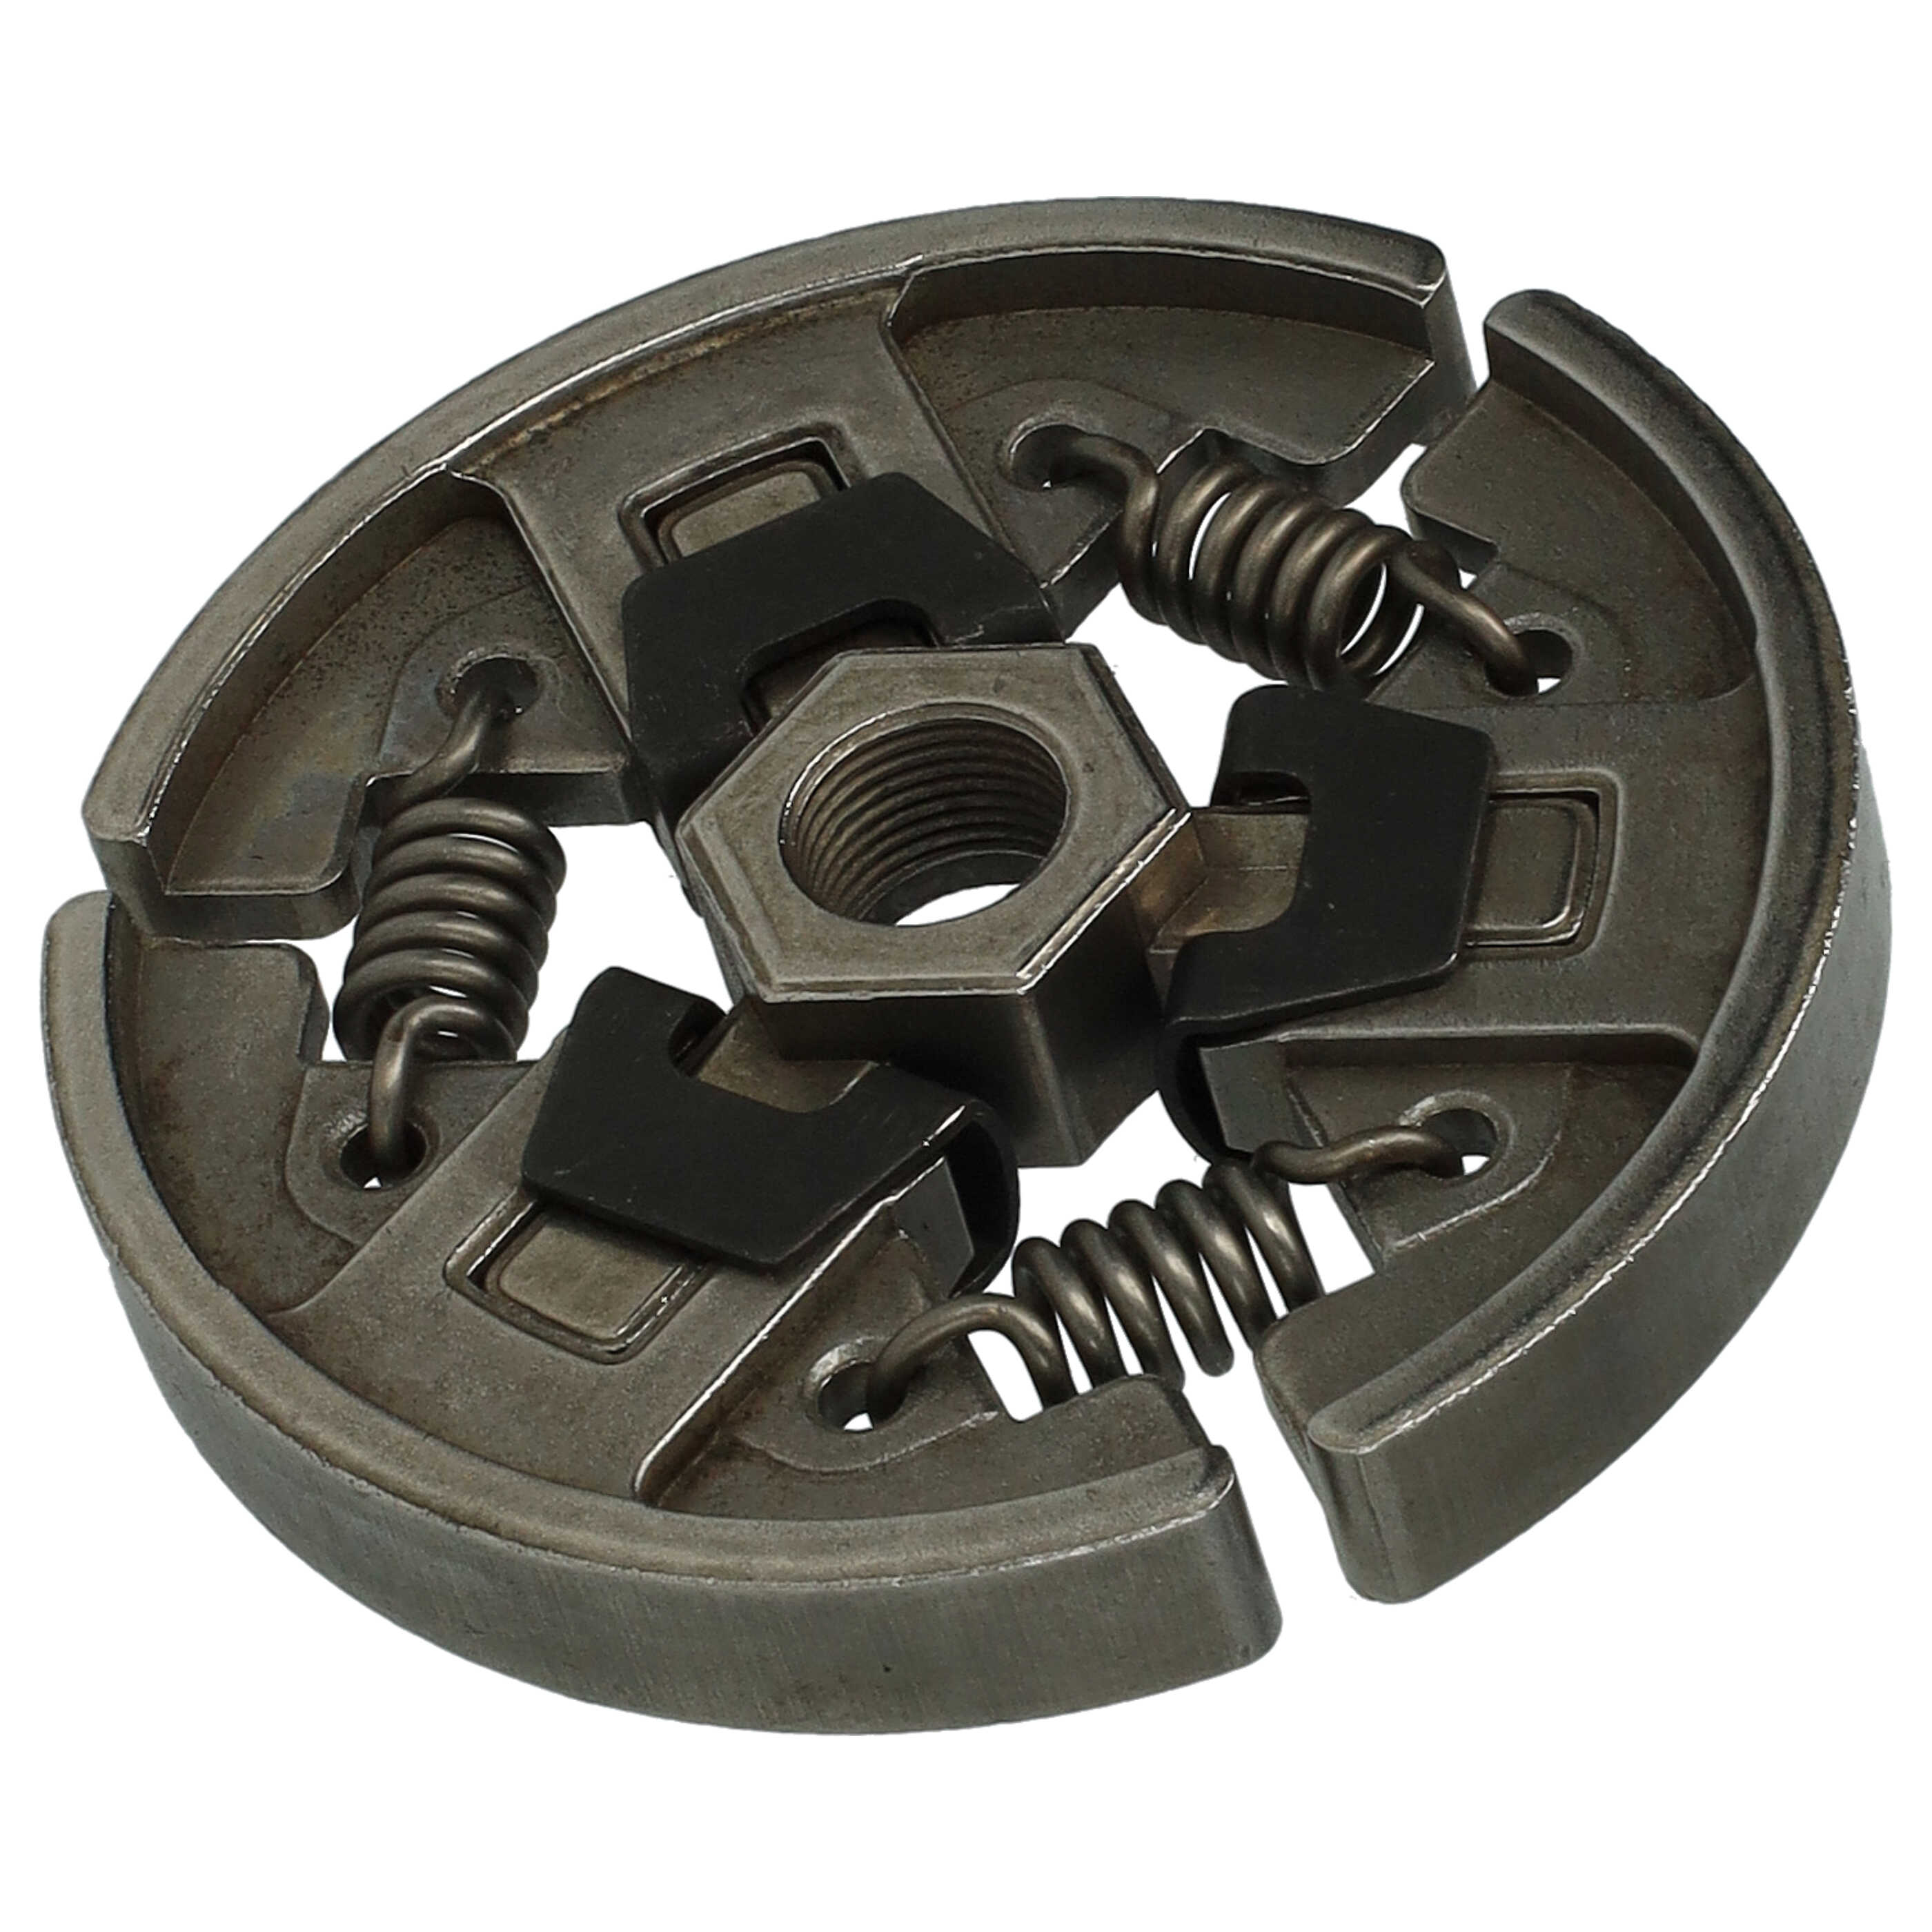 Kupplung als Ersatz für Stihl 1127 160 2051 - Eisen / 65Mn Stahl, 7,5 cm Durchmesser, 1,2 cm Dicke, 166 g